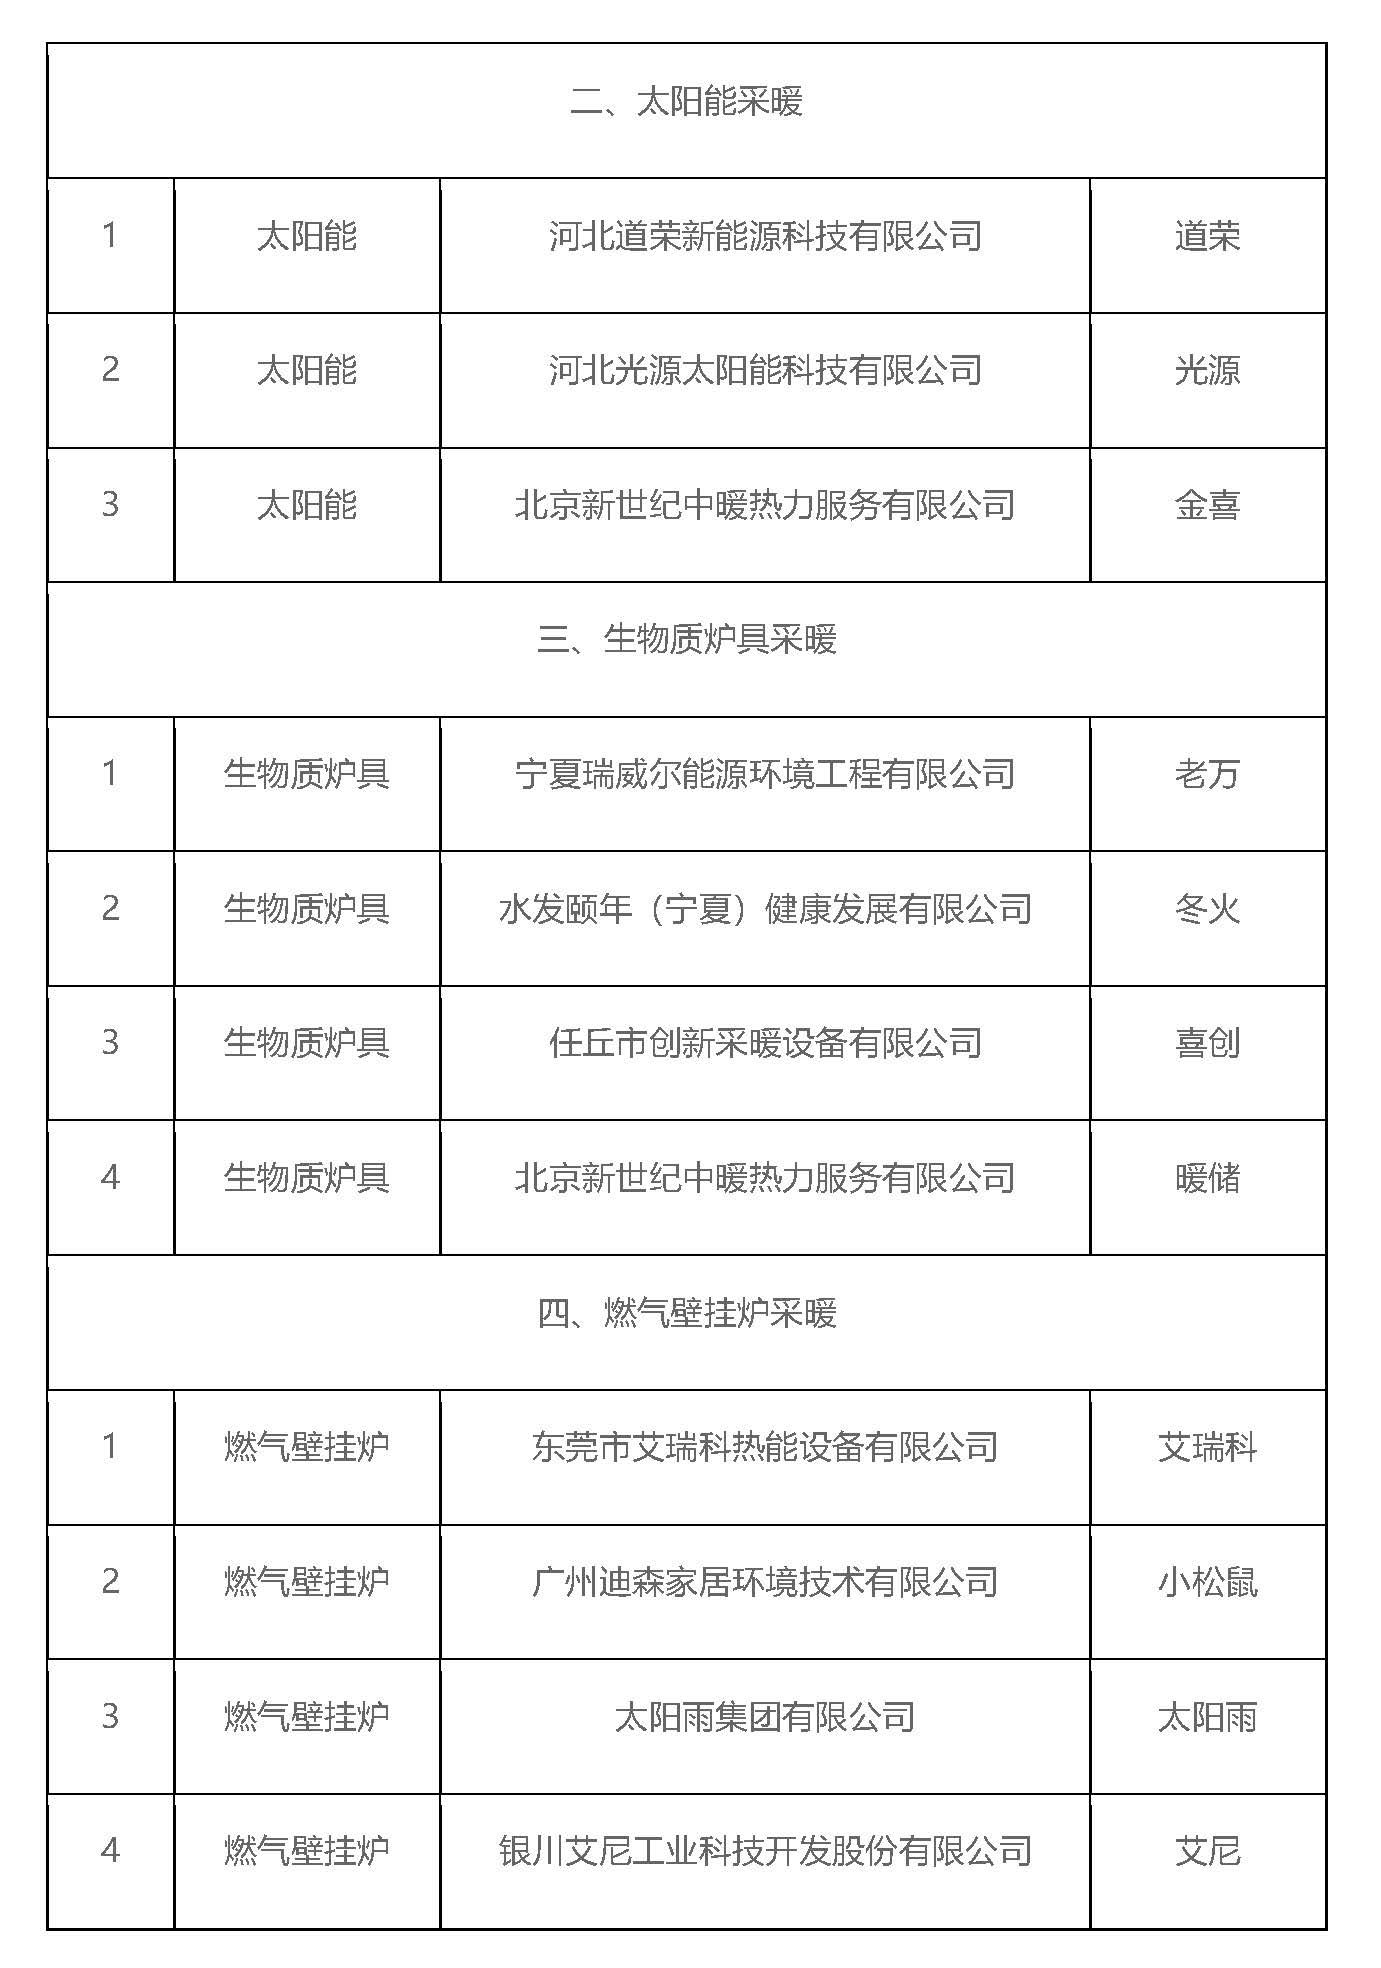 宁夏固原市2022年度冬季清洁取暖试点技术方案推荐名单公示3